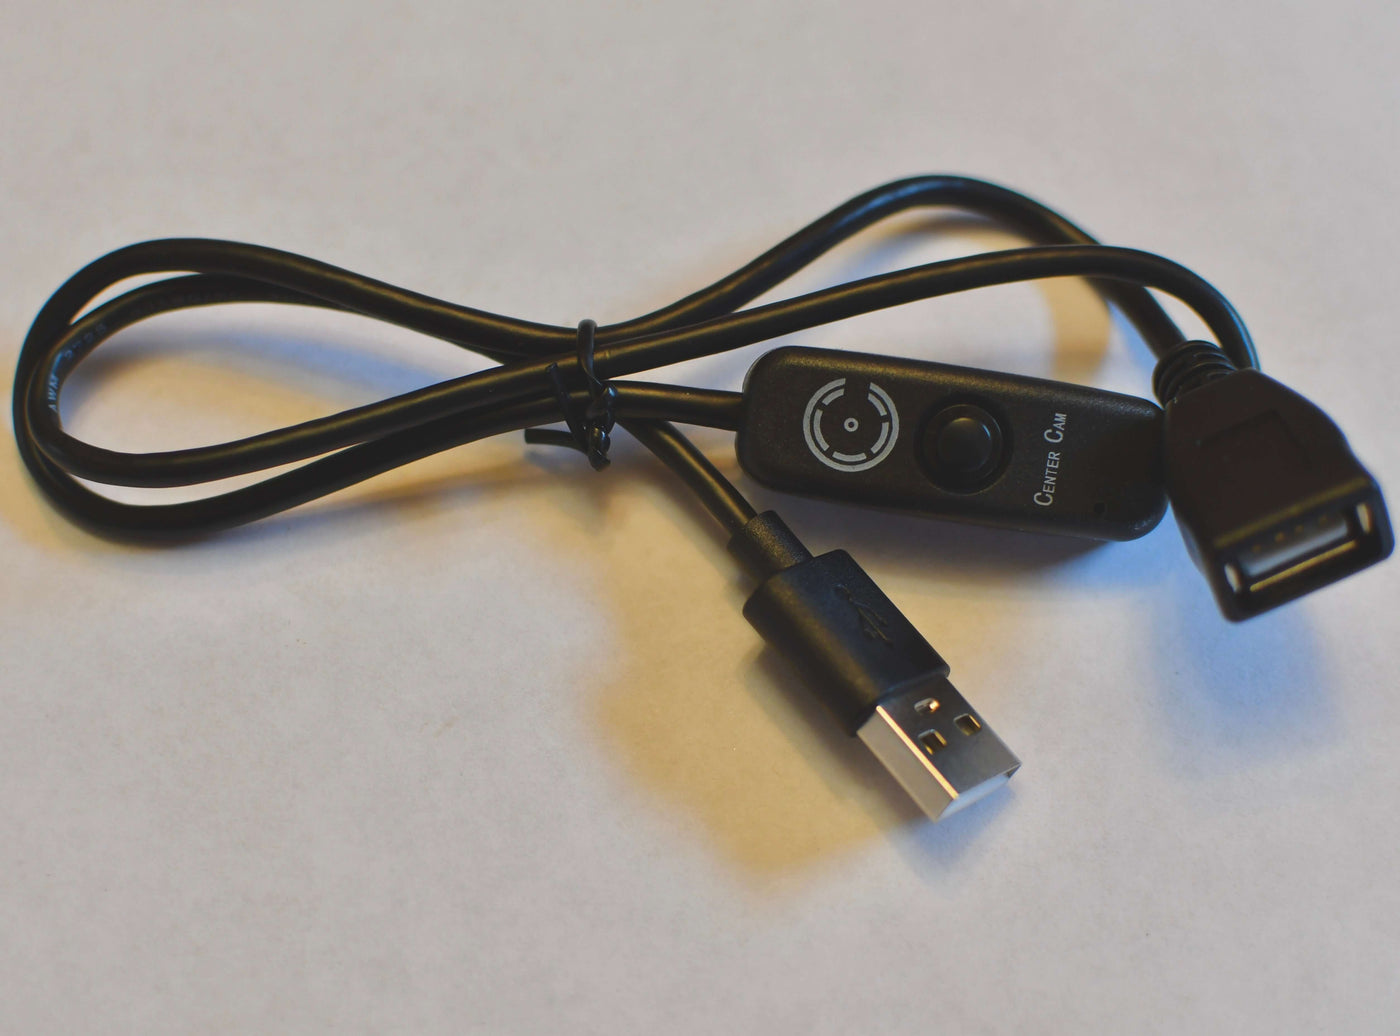 USB - 2.0 Switch for the Center Cam Webcam